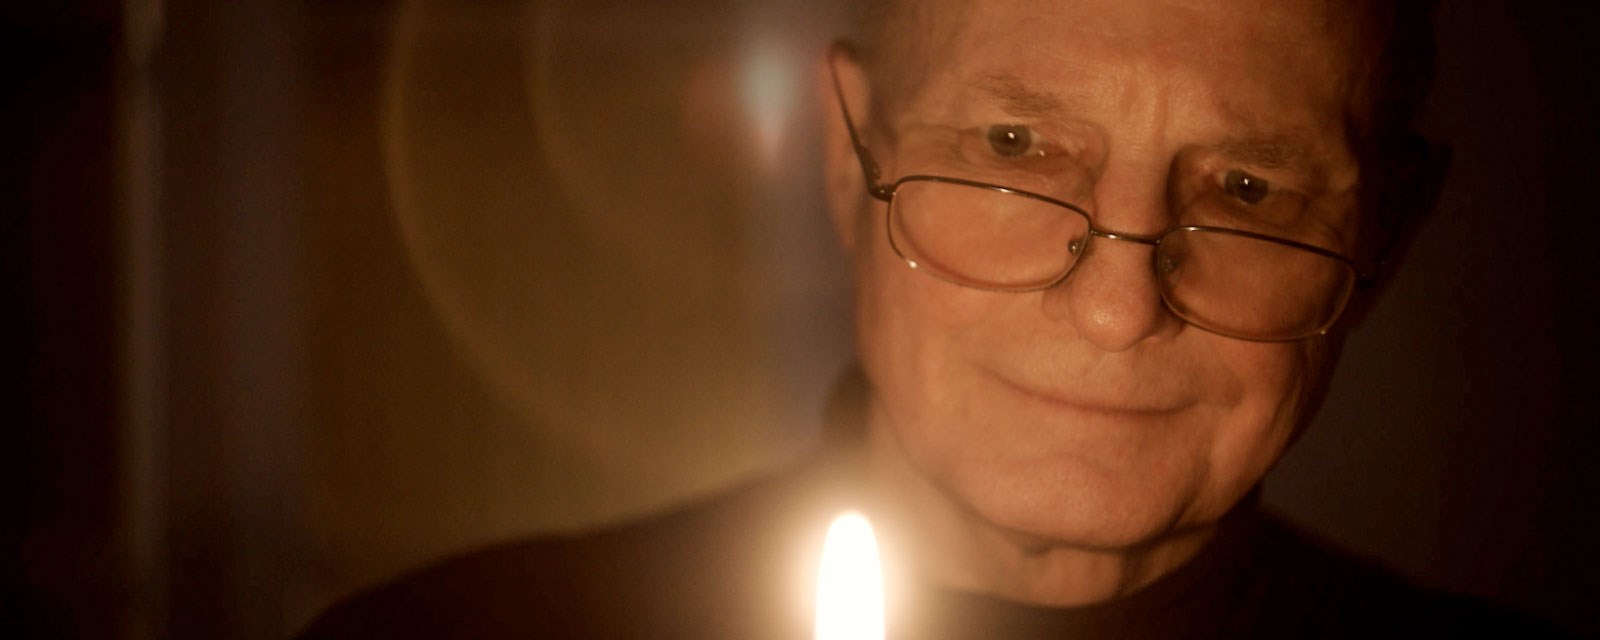 En eldre mann tenner et stearinlys i et ellers mørkt rom. I konturene i ansiktet aner vi et smil